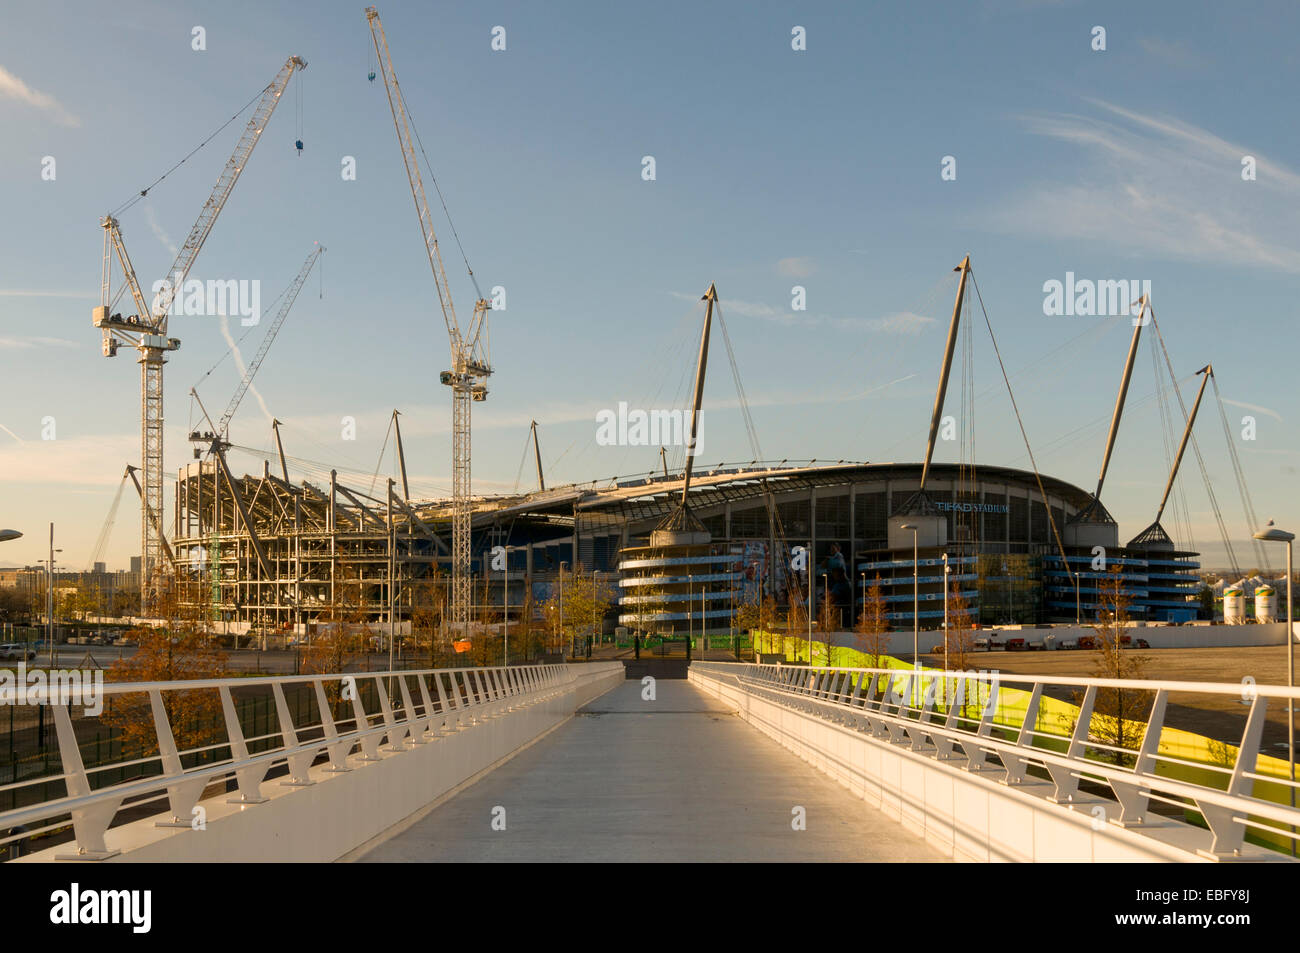 Stadt Manchester Stadion (Etihad Stadion) Expansion arbeitet, Clayton, Manchester, England, Großbritannien, von der neuen Fußgängerbrücke. Stockfoto